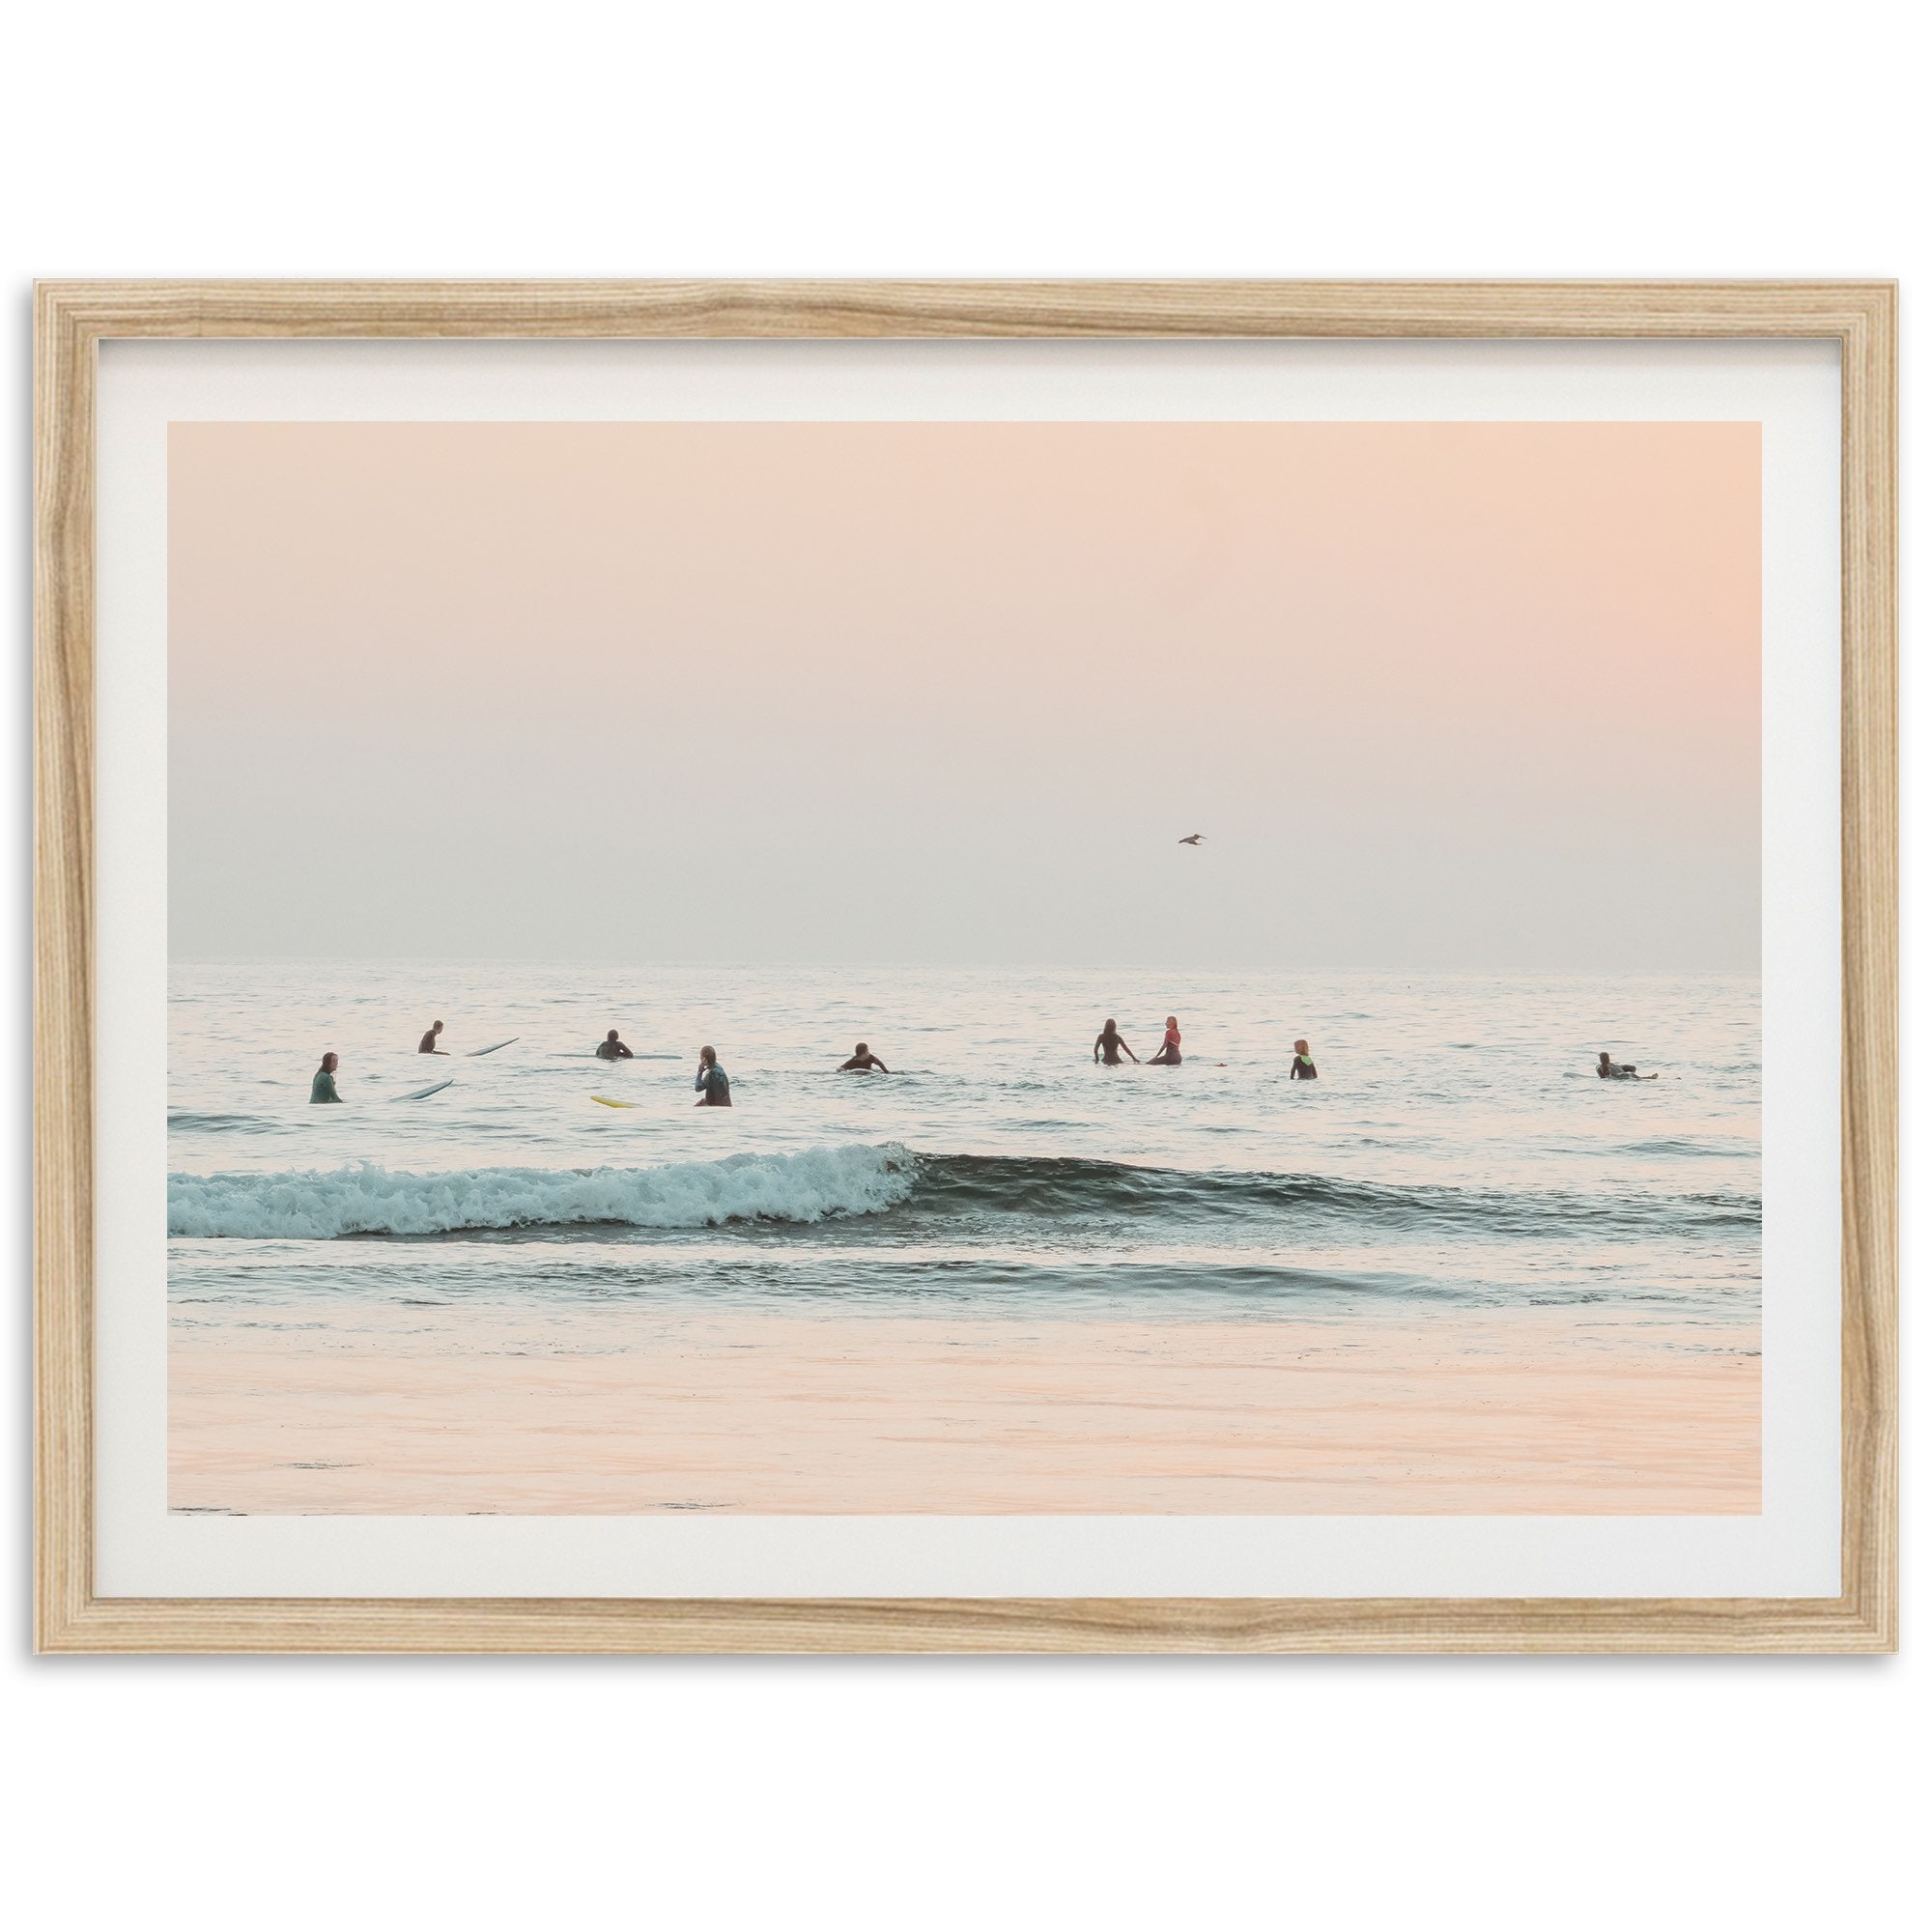 Fine Art Ocean Surf Print Vintage Minimalist California Beach House Framed  Fine Art Photography Wall Decor 